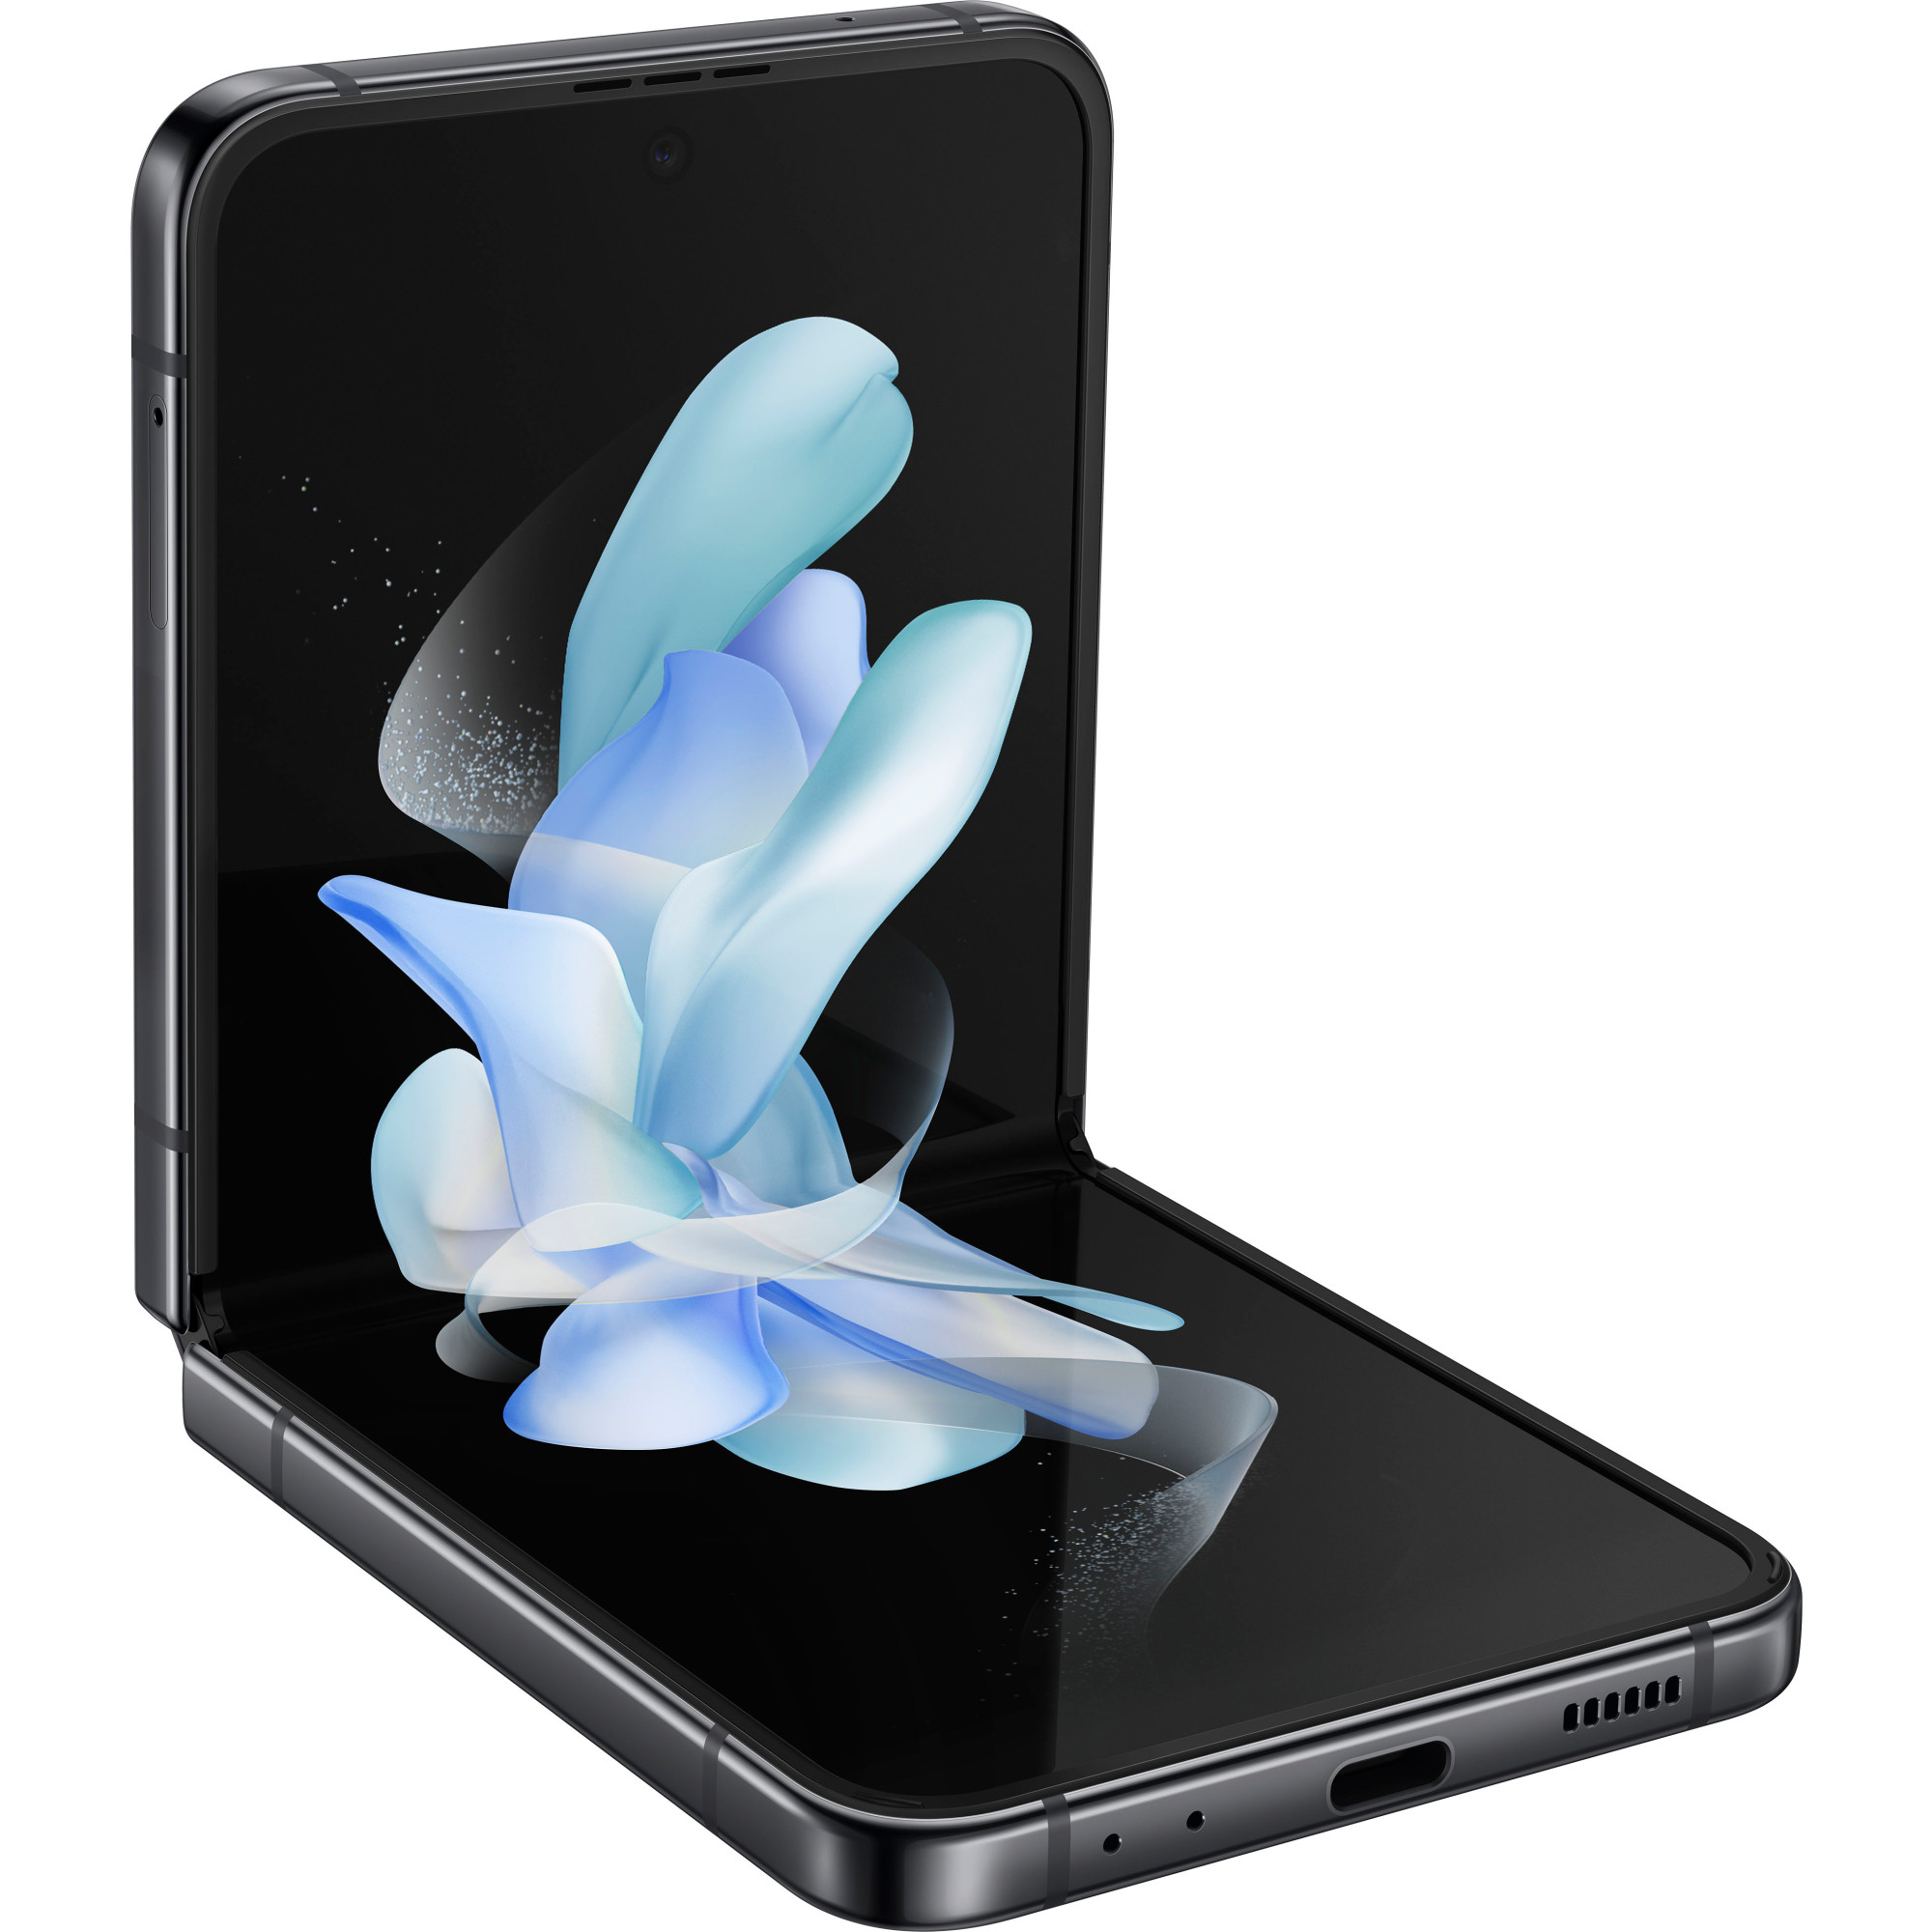 Samsung Galaxy Z Flip5 Gray 512GB US版